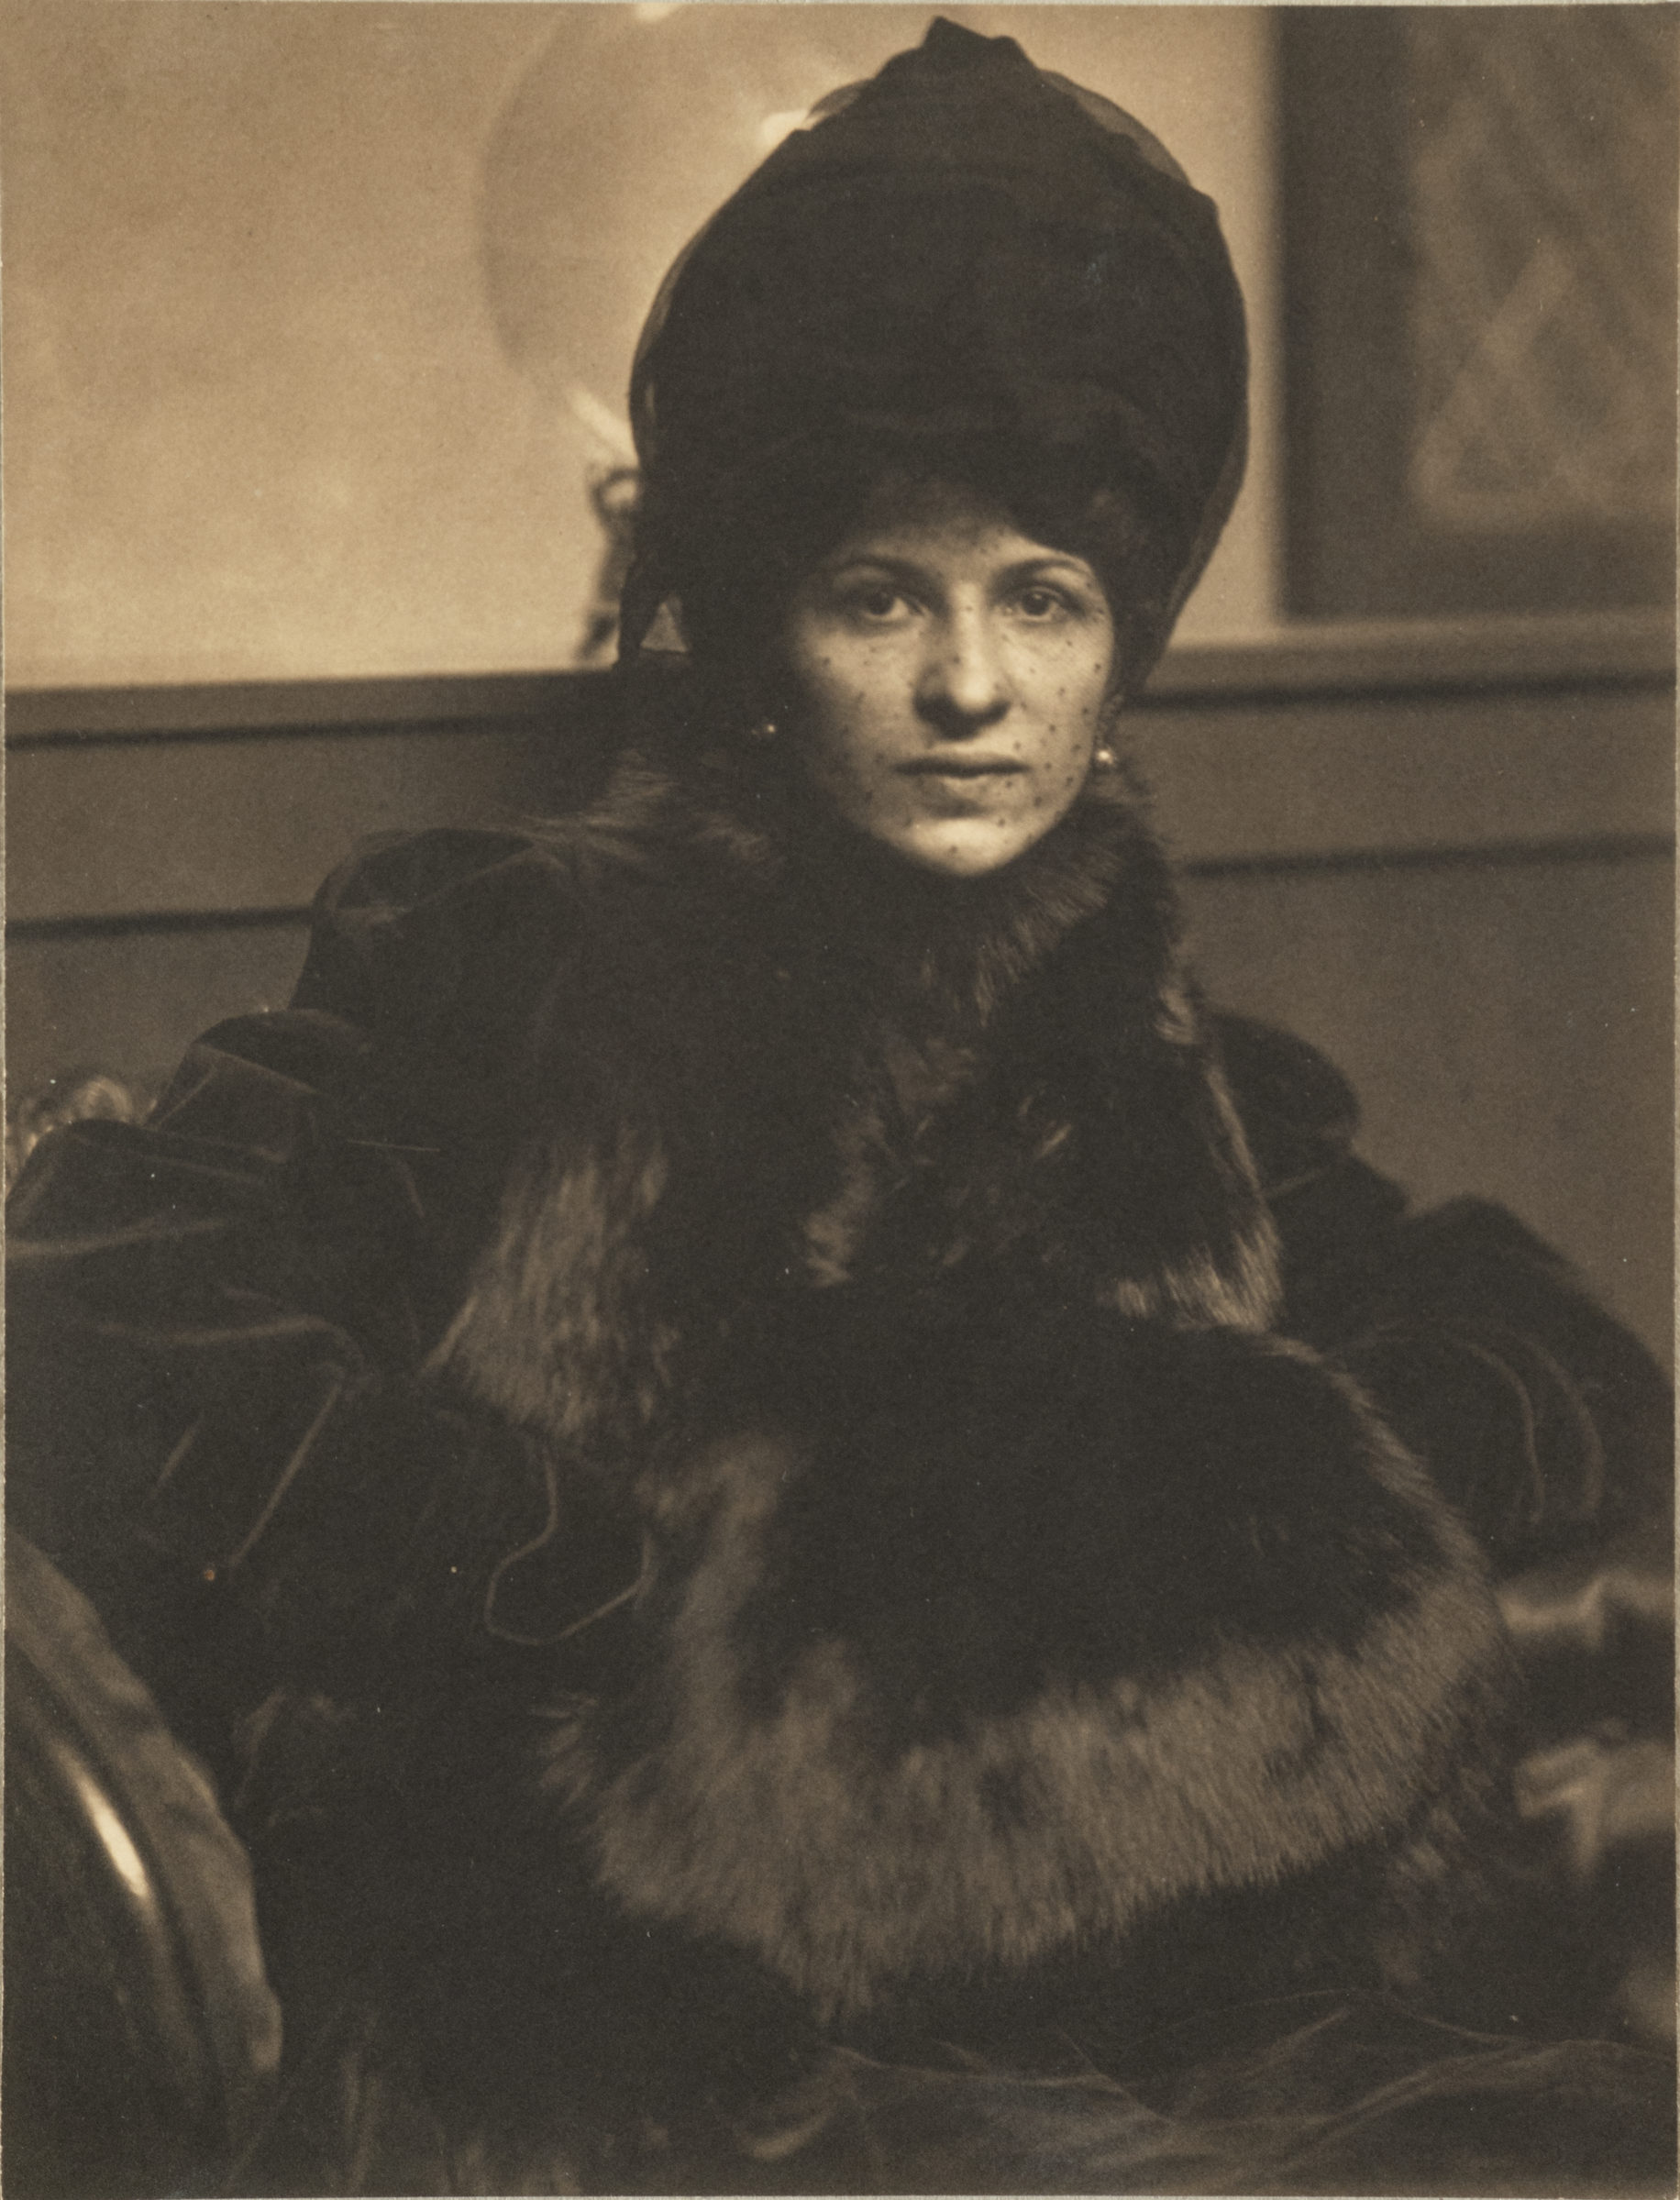 Retrato de Eulabee Dix by Gertrude Käsebier - ca. 1910 - 20 x 15 cm Museo Nacional de Mujeres Artistas